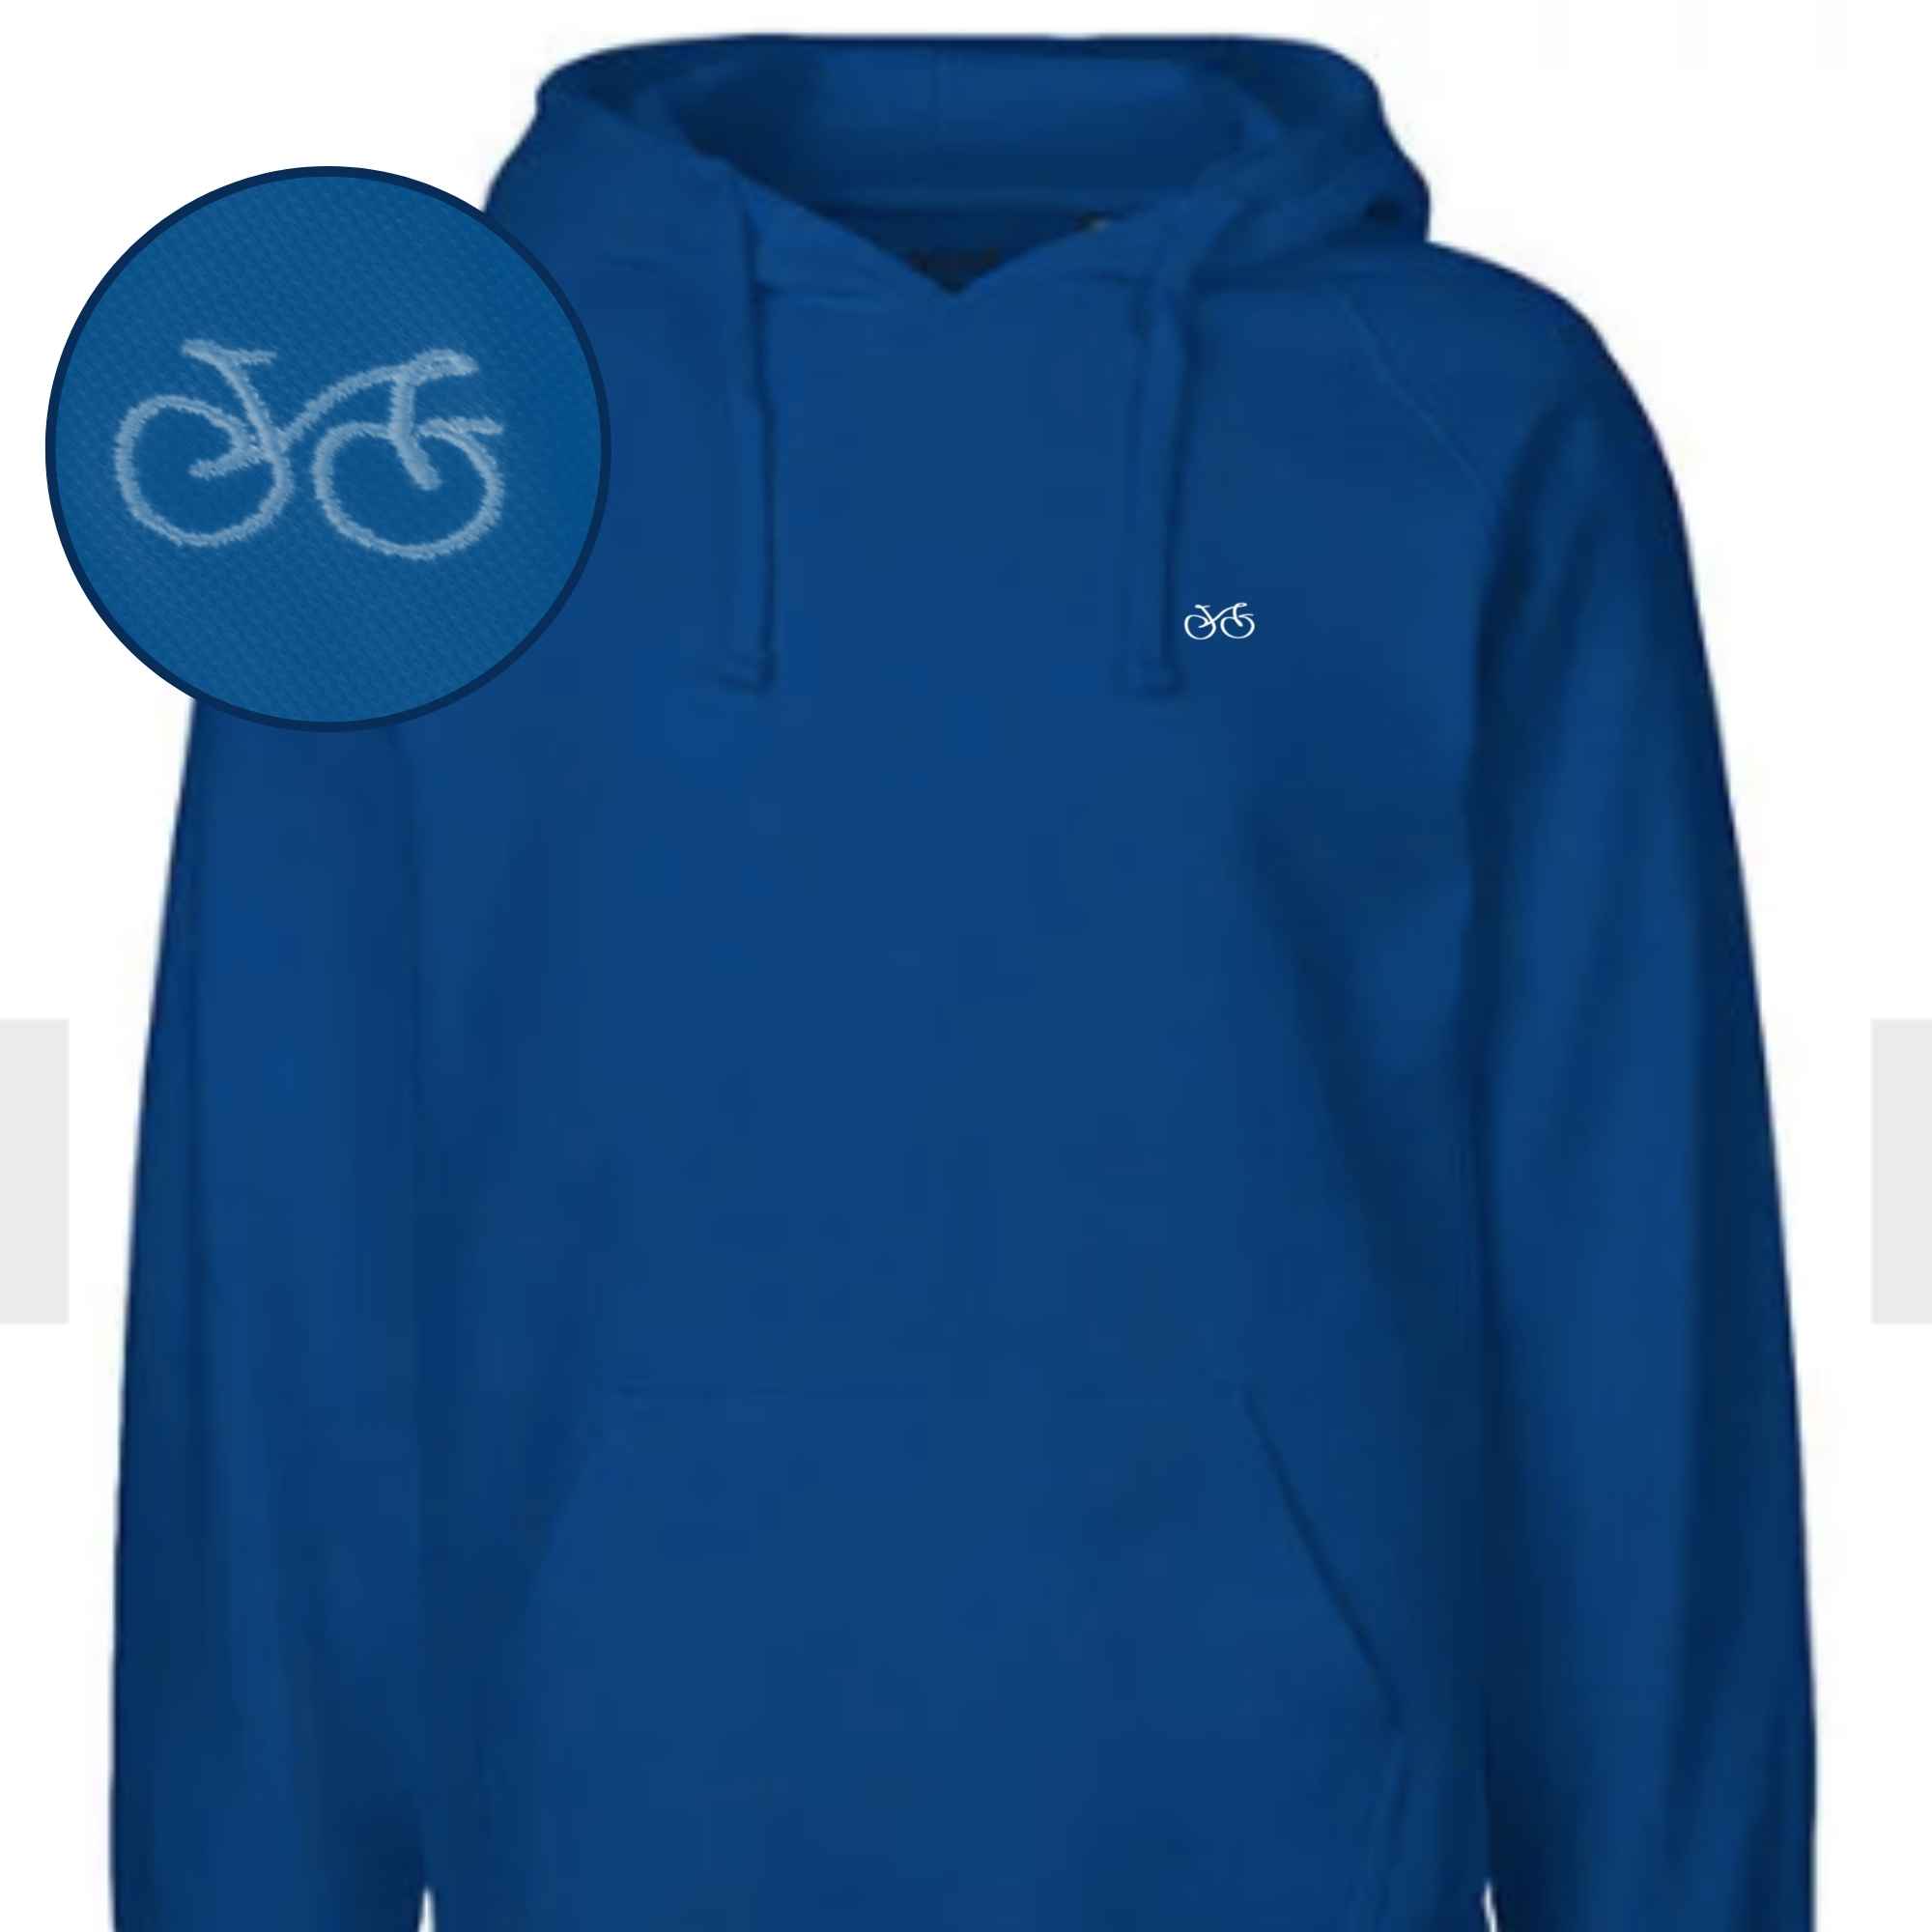 Qualitäts-Pullover in Blau mit Fahrradmotiv hochwertig gestickt 